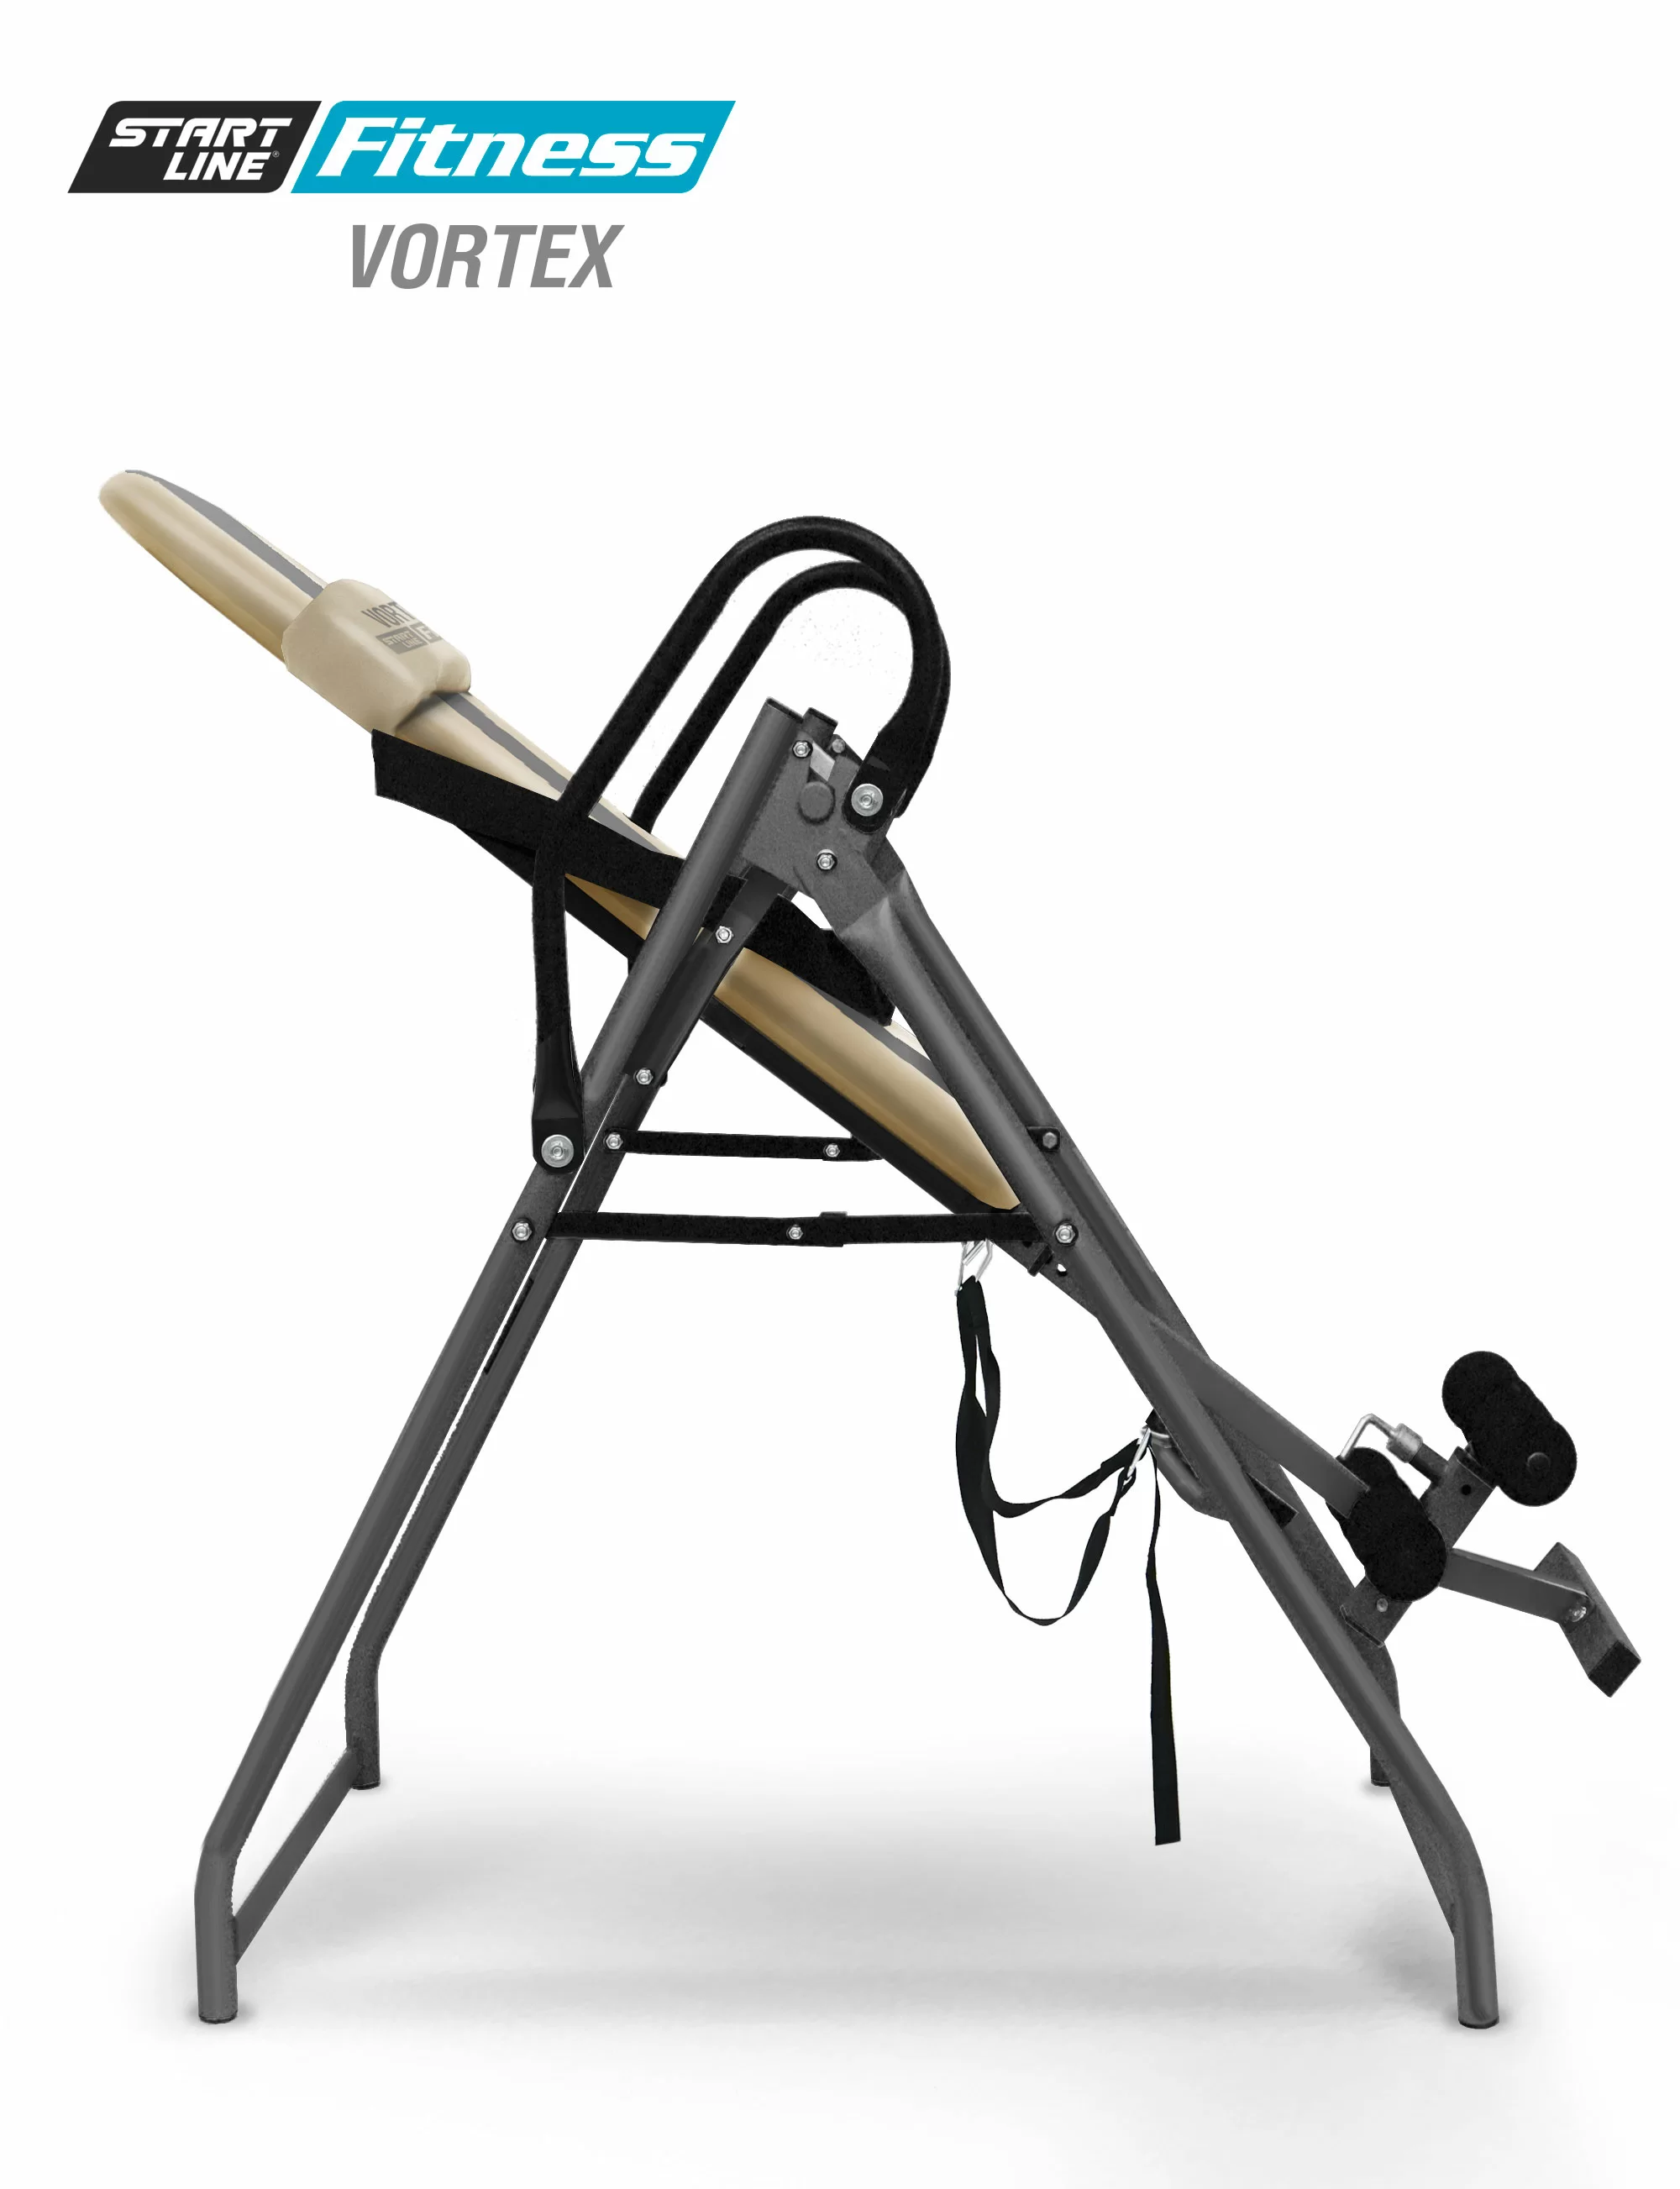 Фото Инверсионный стол Vortex бежево-серый c подушкой со склада магазина СпортЕВ